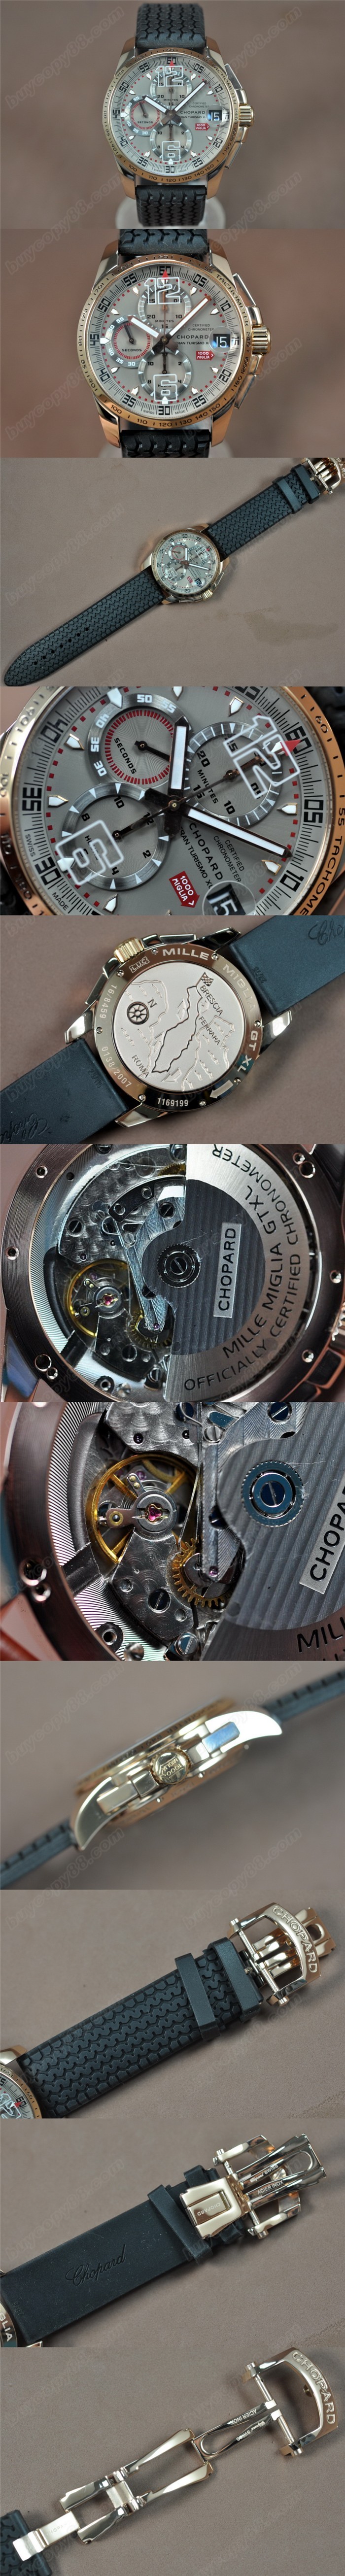 蕭邦錶Chopard Mile Miglia GTXXL Chrono 玫瑰金/RU 亞洲7750 自動機芯搭載0